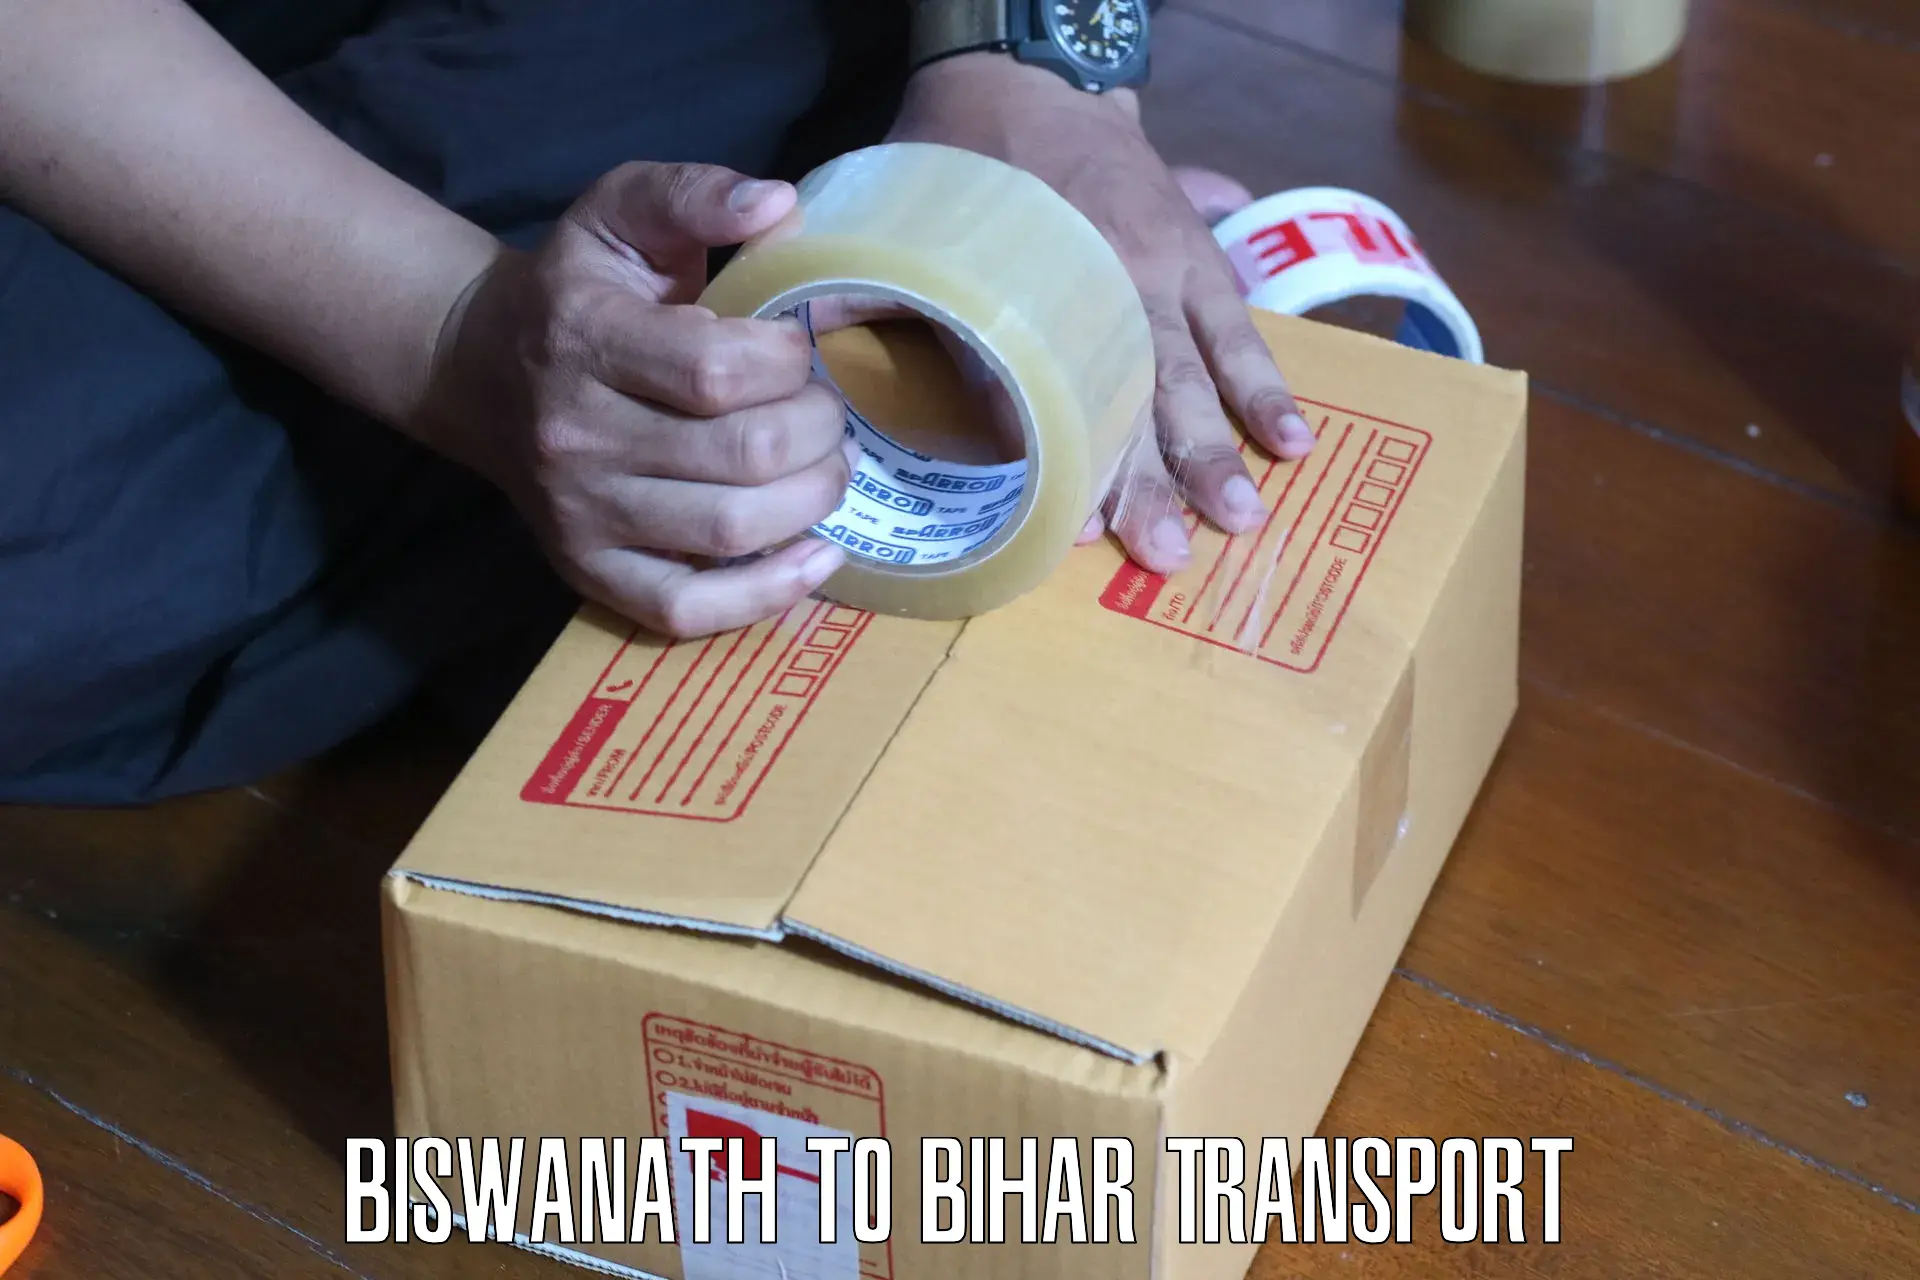 Cargo transport services Biswanath to Sitamarhi